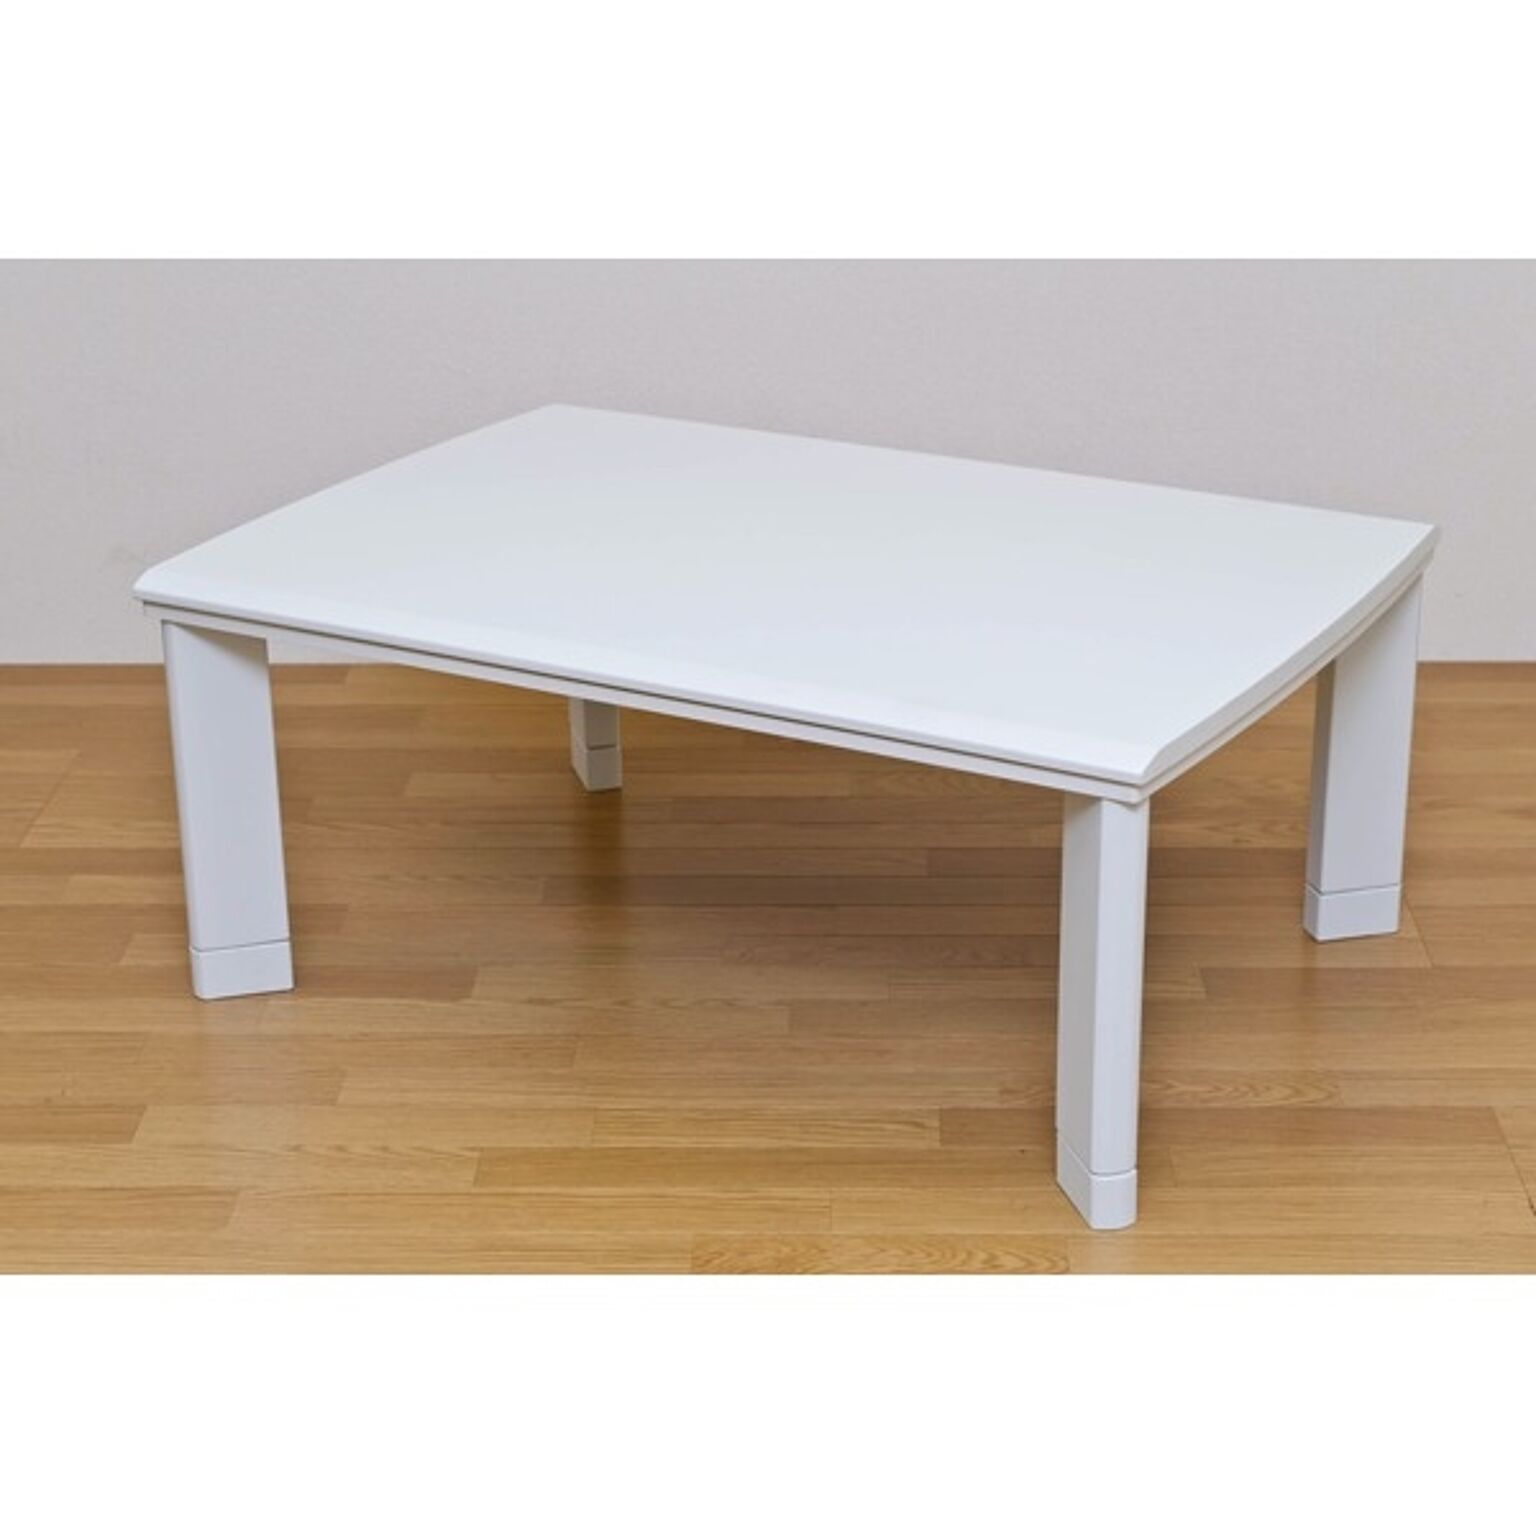 継ぎ足式モダンこたつテーブル 本体 長方形/105cm×75cm ホワイト(白) 木製 本体 高さ調節可 テーパー加工